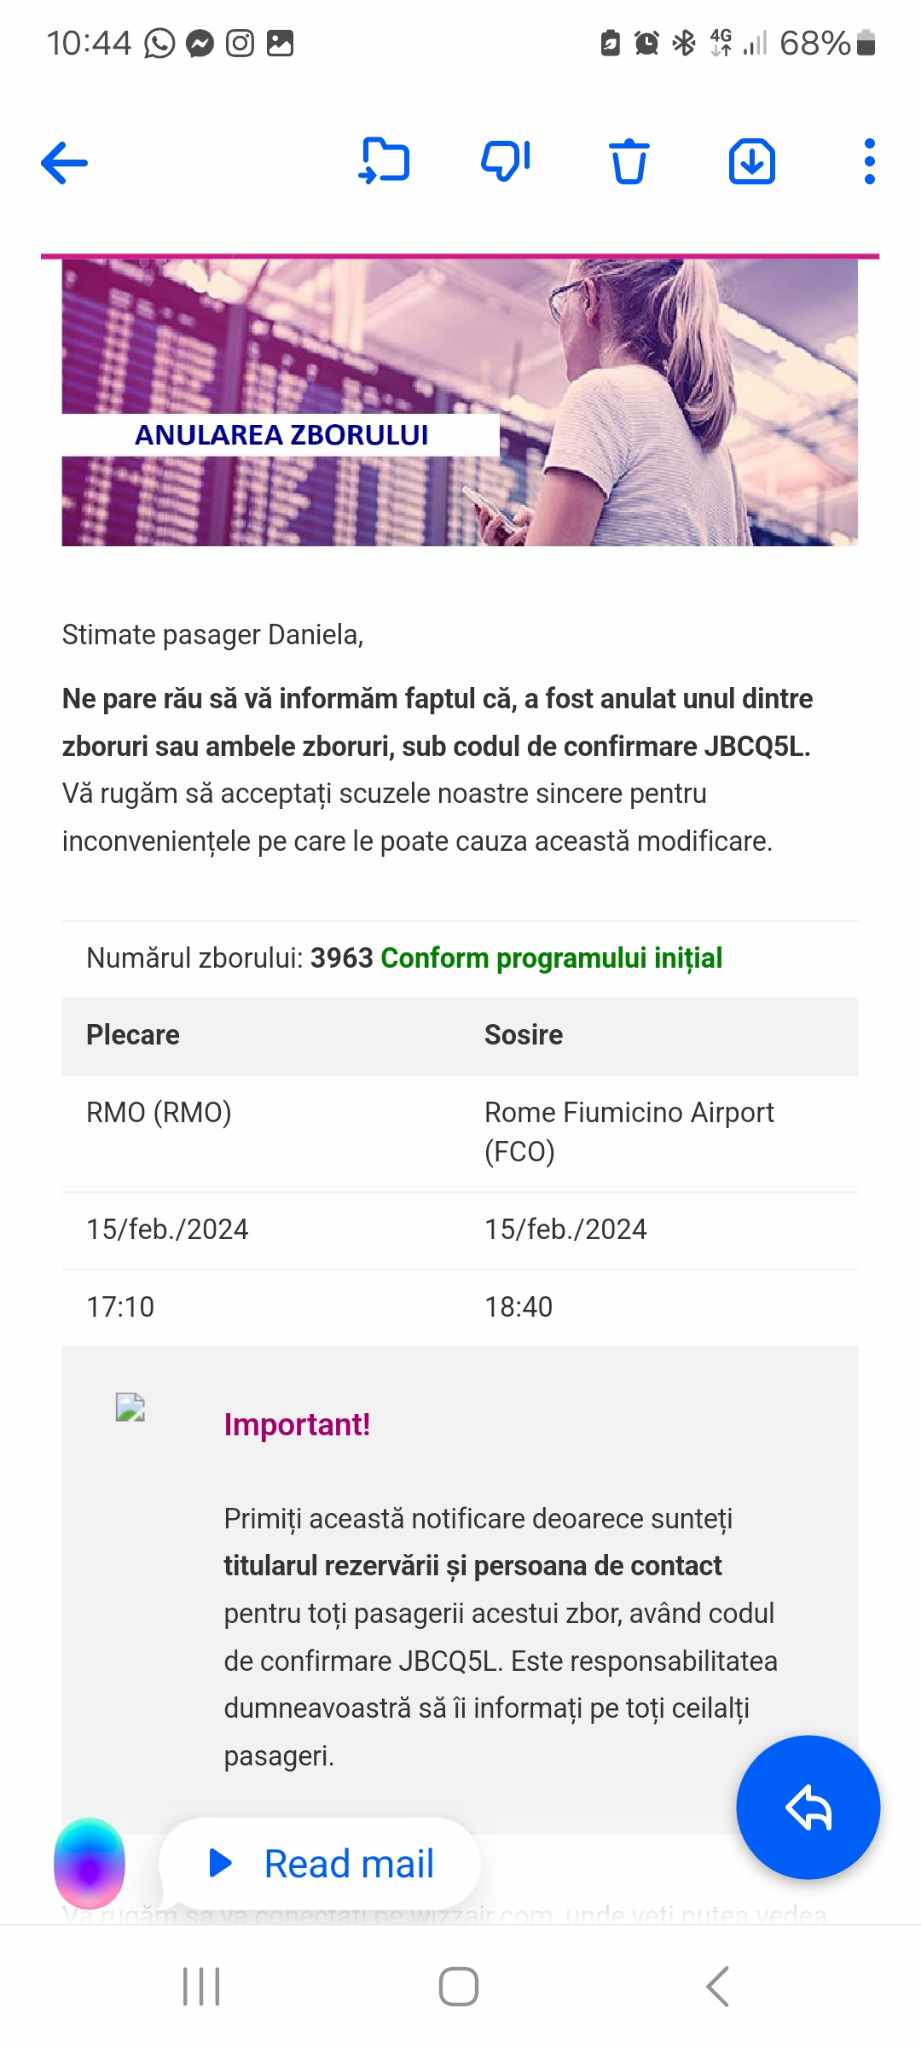 (ОБНОВЛЕНО) Wizz Air отменил рейсы из Кишинева, начиная с 15 января? Что случилось